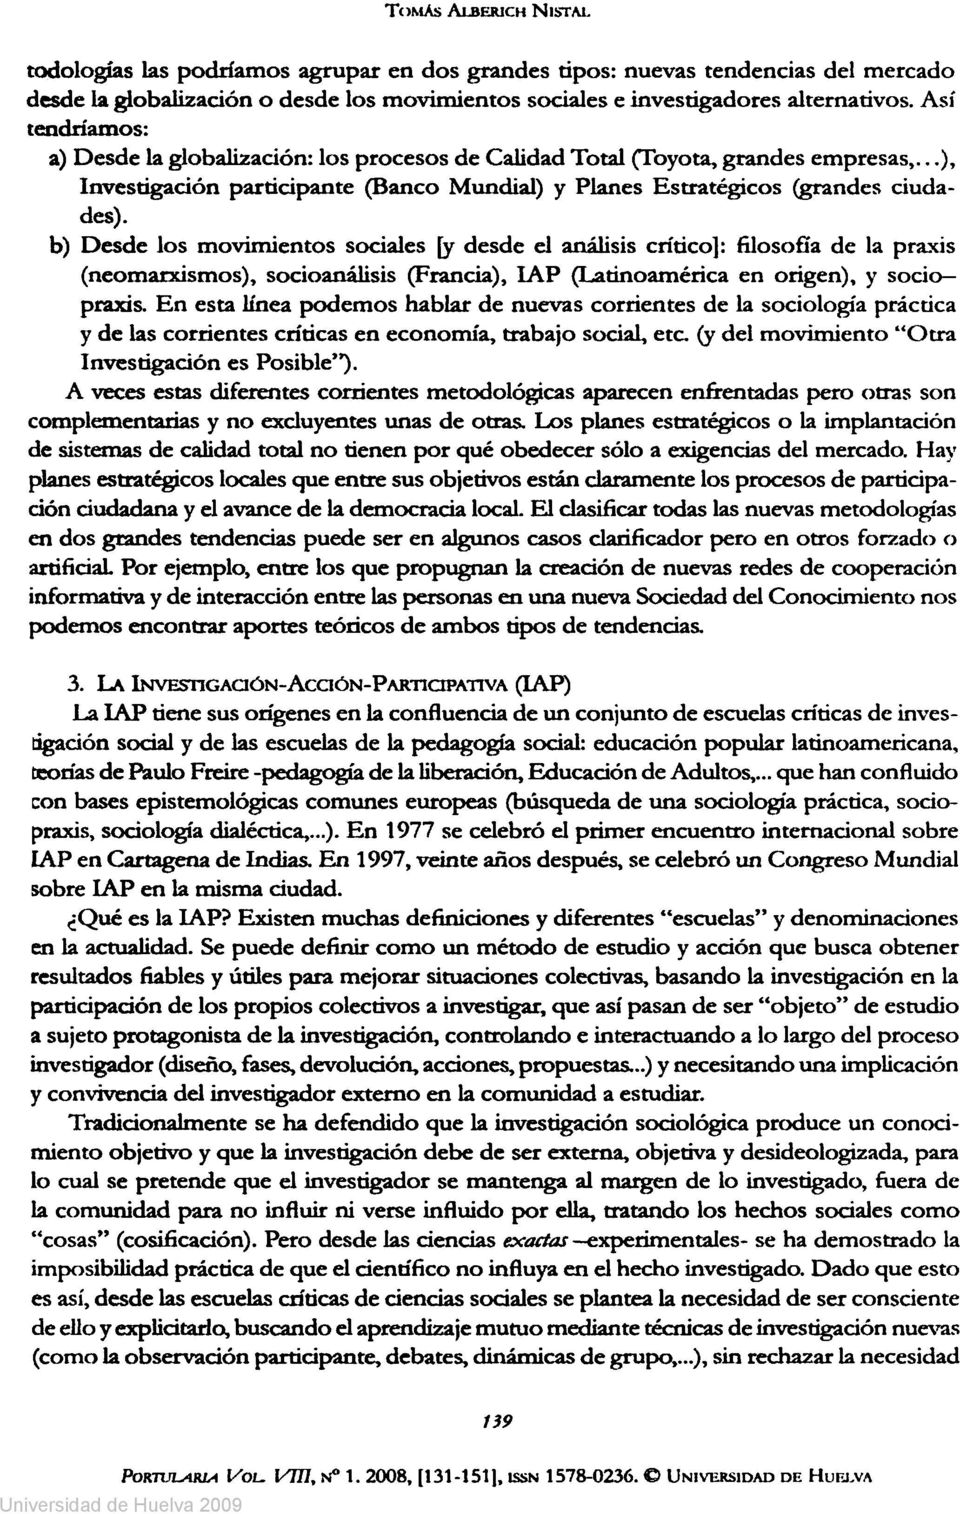 b) Desde los movimientos sociales [y desde el análisis crítico]: filosofía de la praxis (neomarxismos), socioanálisis (Francia), IAP (Latinoamérica en origen), y socio praxis.